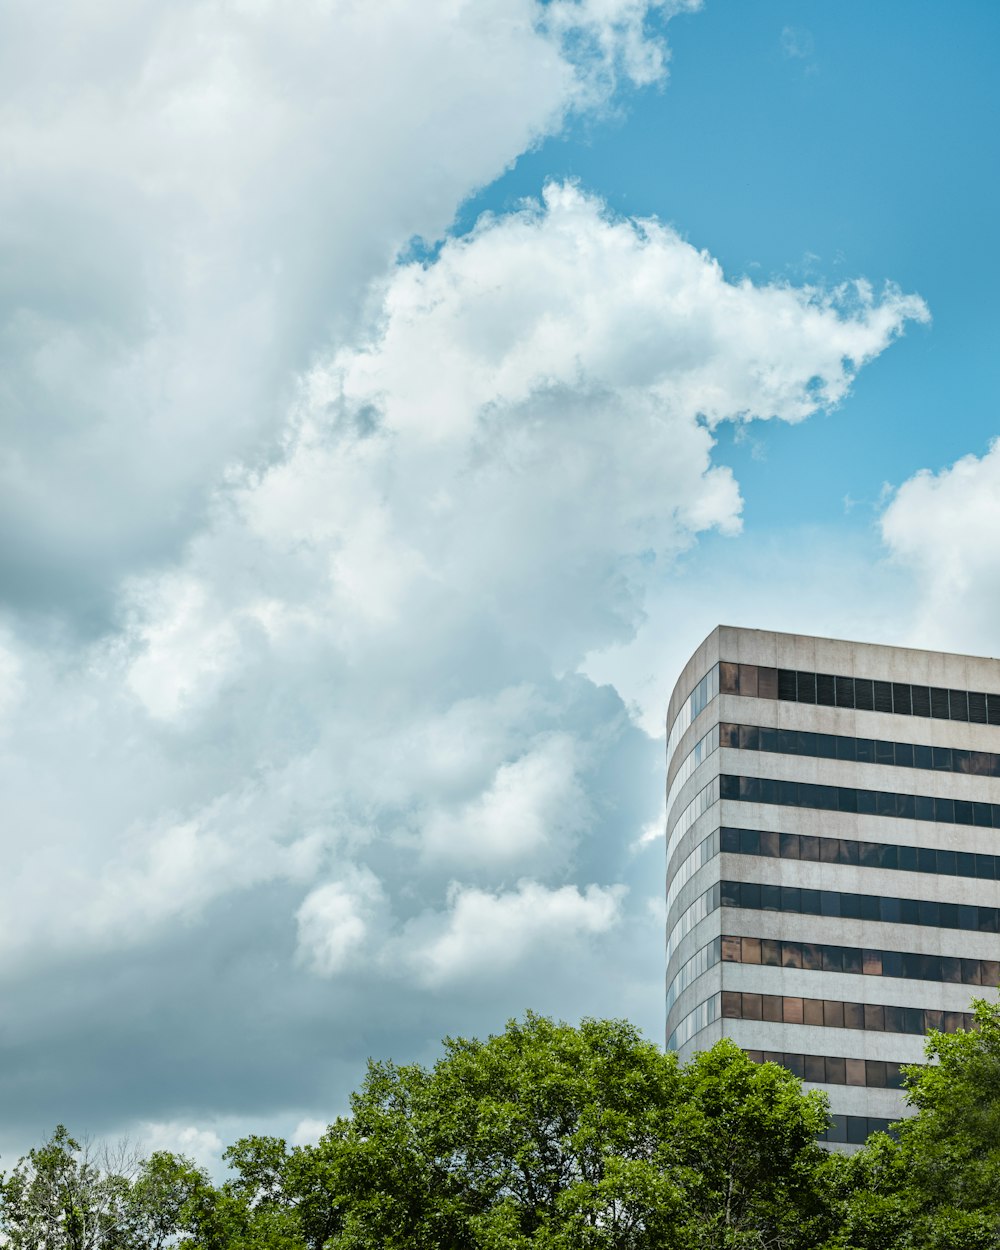 Edificio de varios pisos de hormigón blanco bajo el cielo nublado durante el día